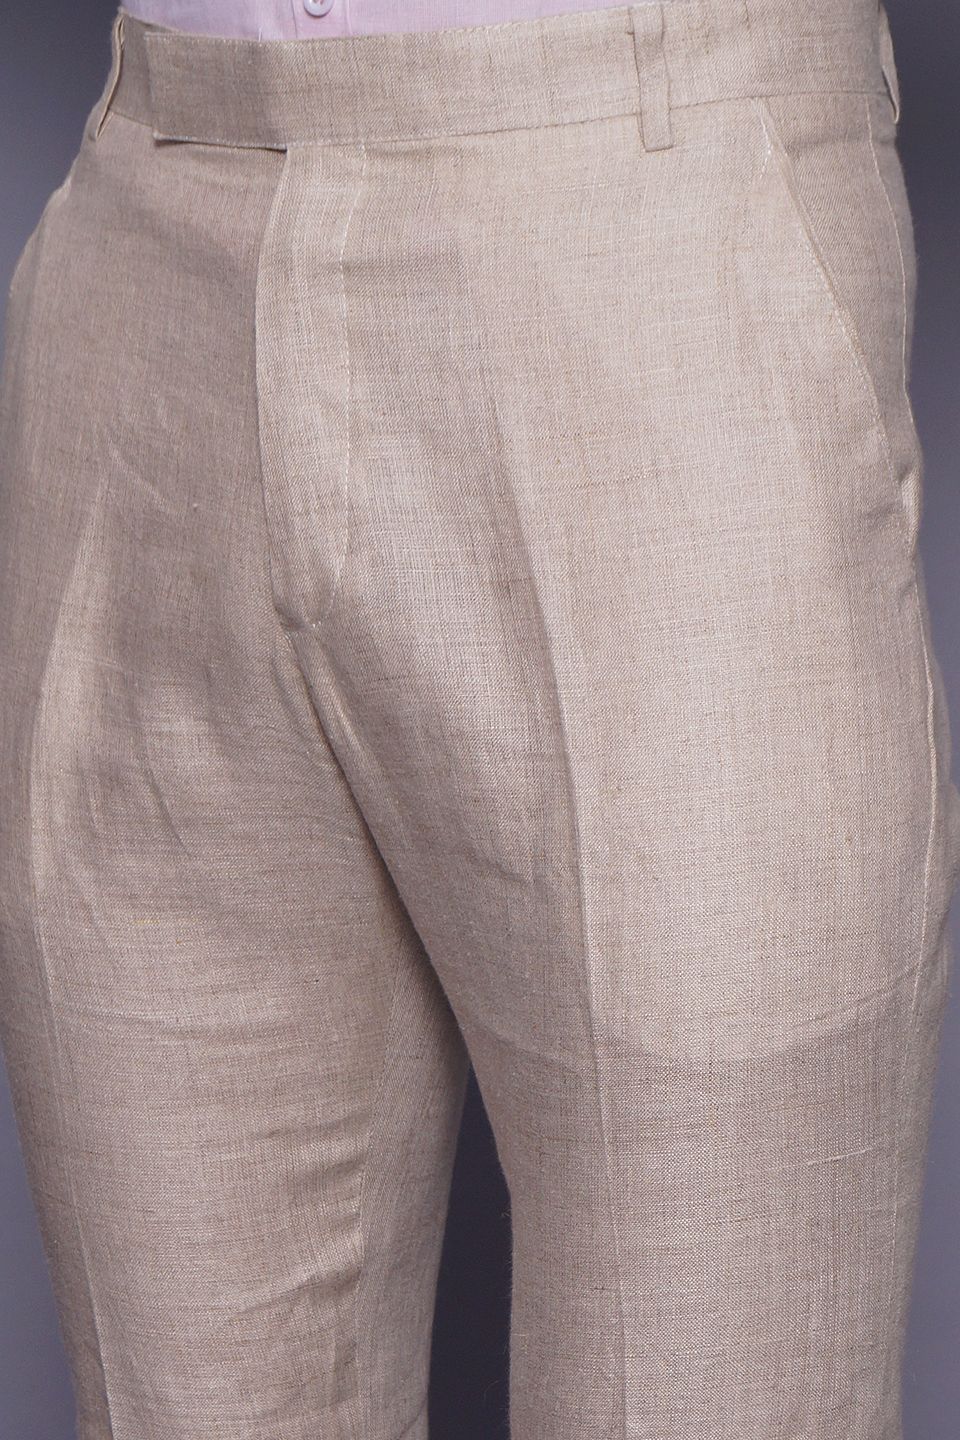 Wintage Men's Cream Regular Fit Pant 100% Linen 